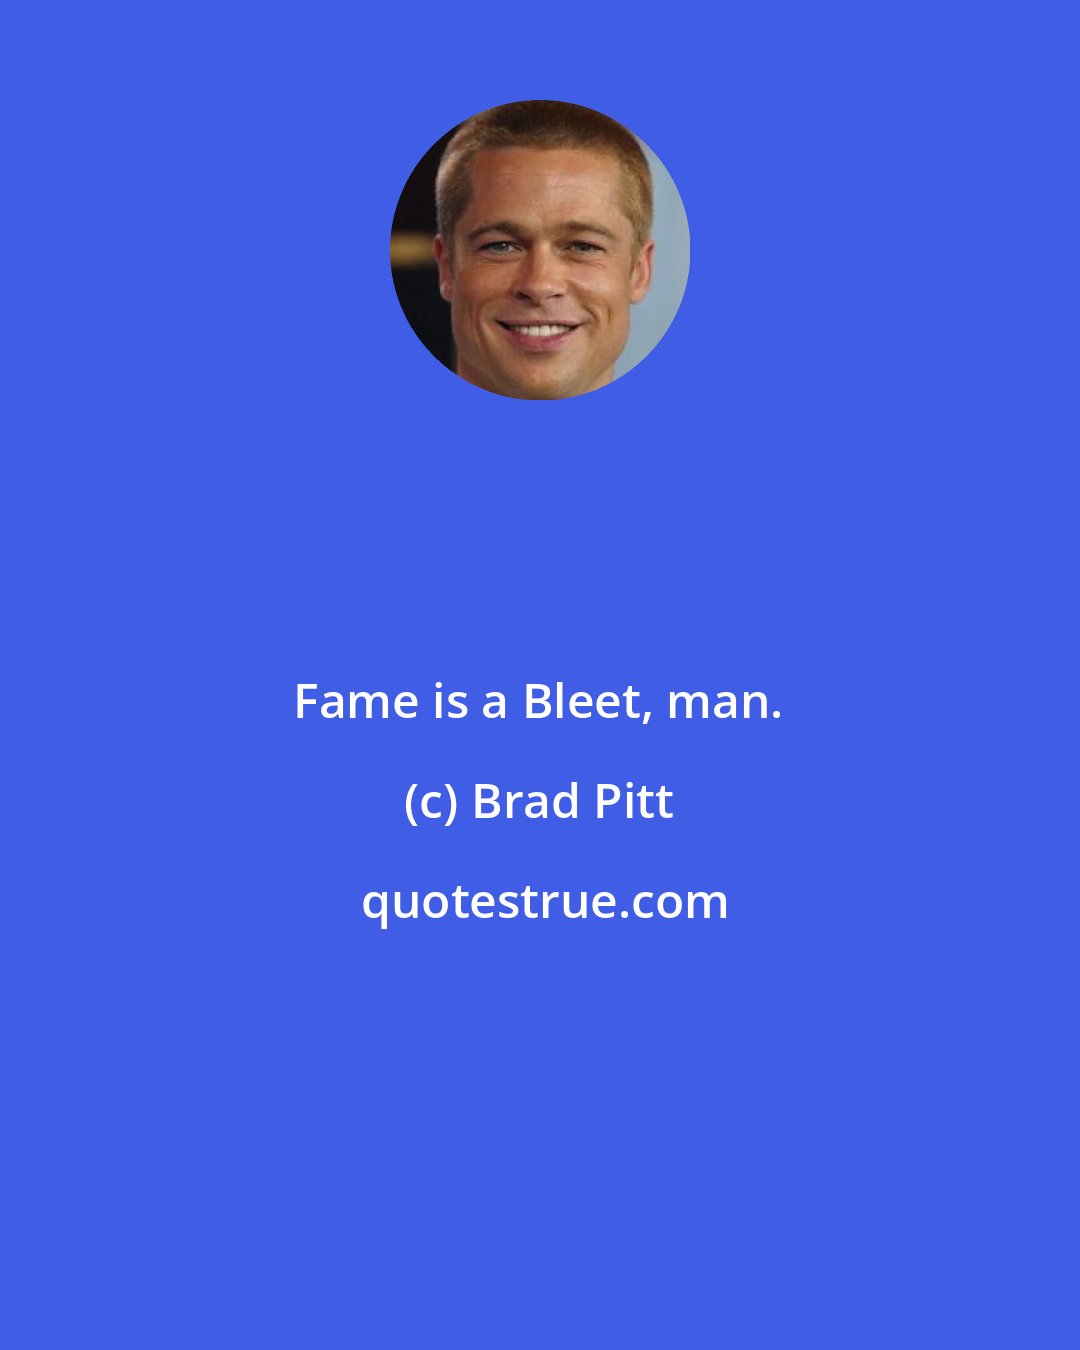 Brad Pitt: Fame is a Bleet, man.